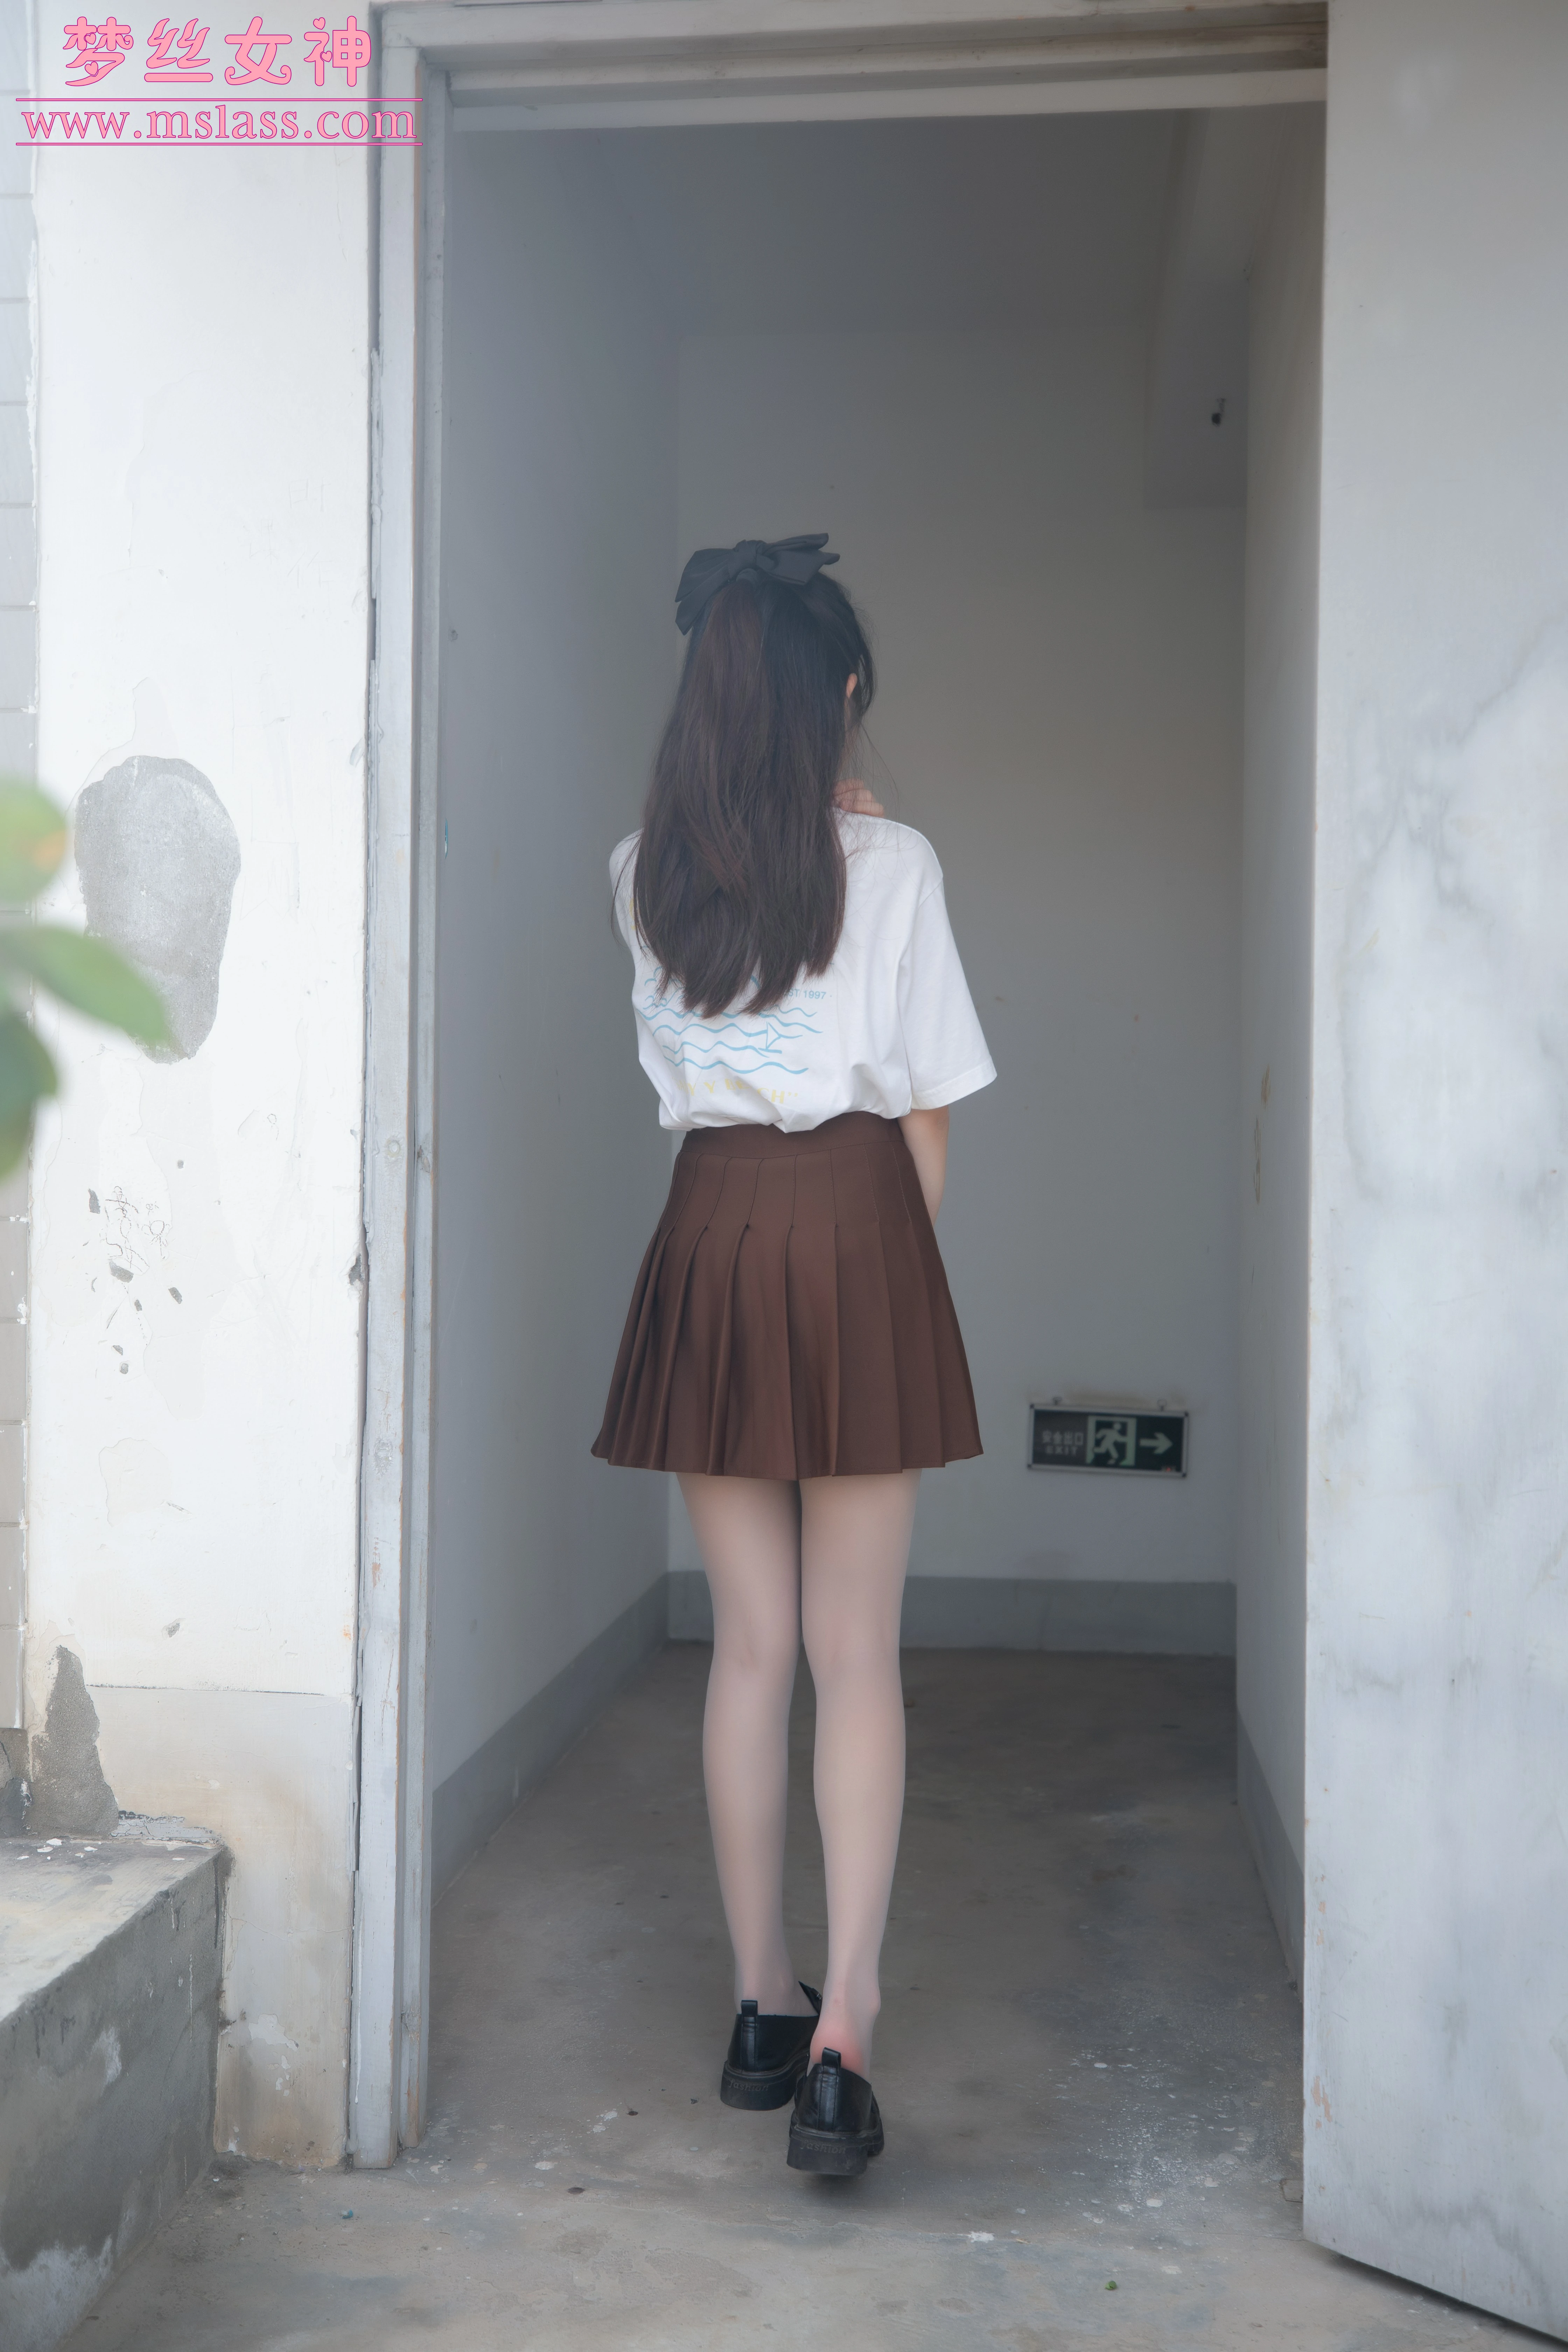 [MSLASS梦丝女神]NO.173 JK丝袜小格调 新模张小雪 白色短袖与棕色短裙加肉丝美腿性感写真集,0005